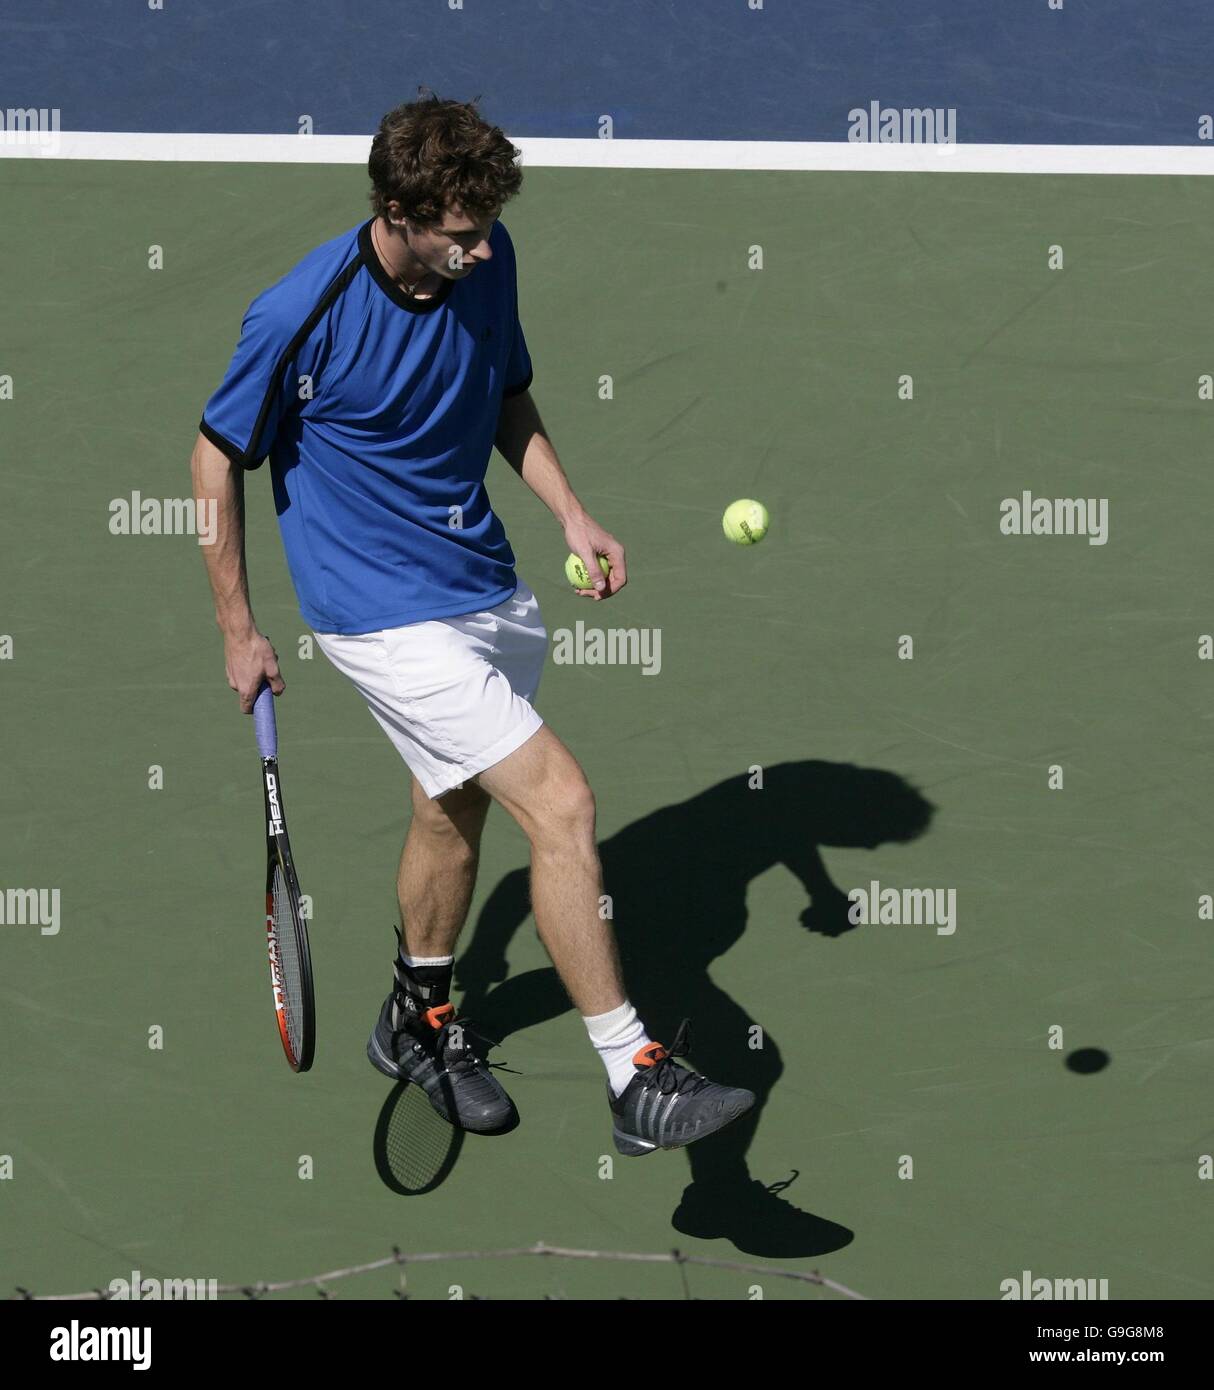 Der Großbritanniens Andy Murray übt sich vor dem morgigen vierten Runde gegen Nikolay Davydenko bei den US Open in Flushing Meadow, New York. Stockfoto